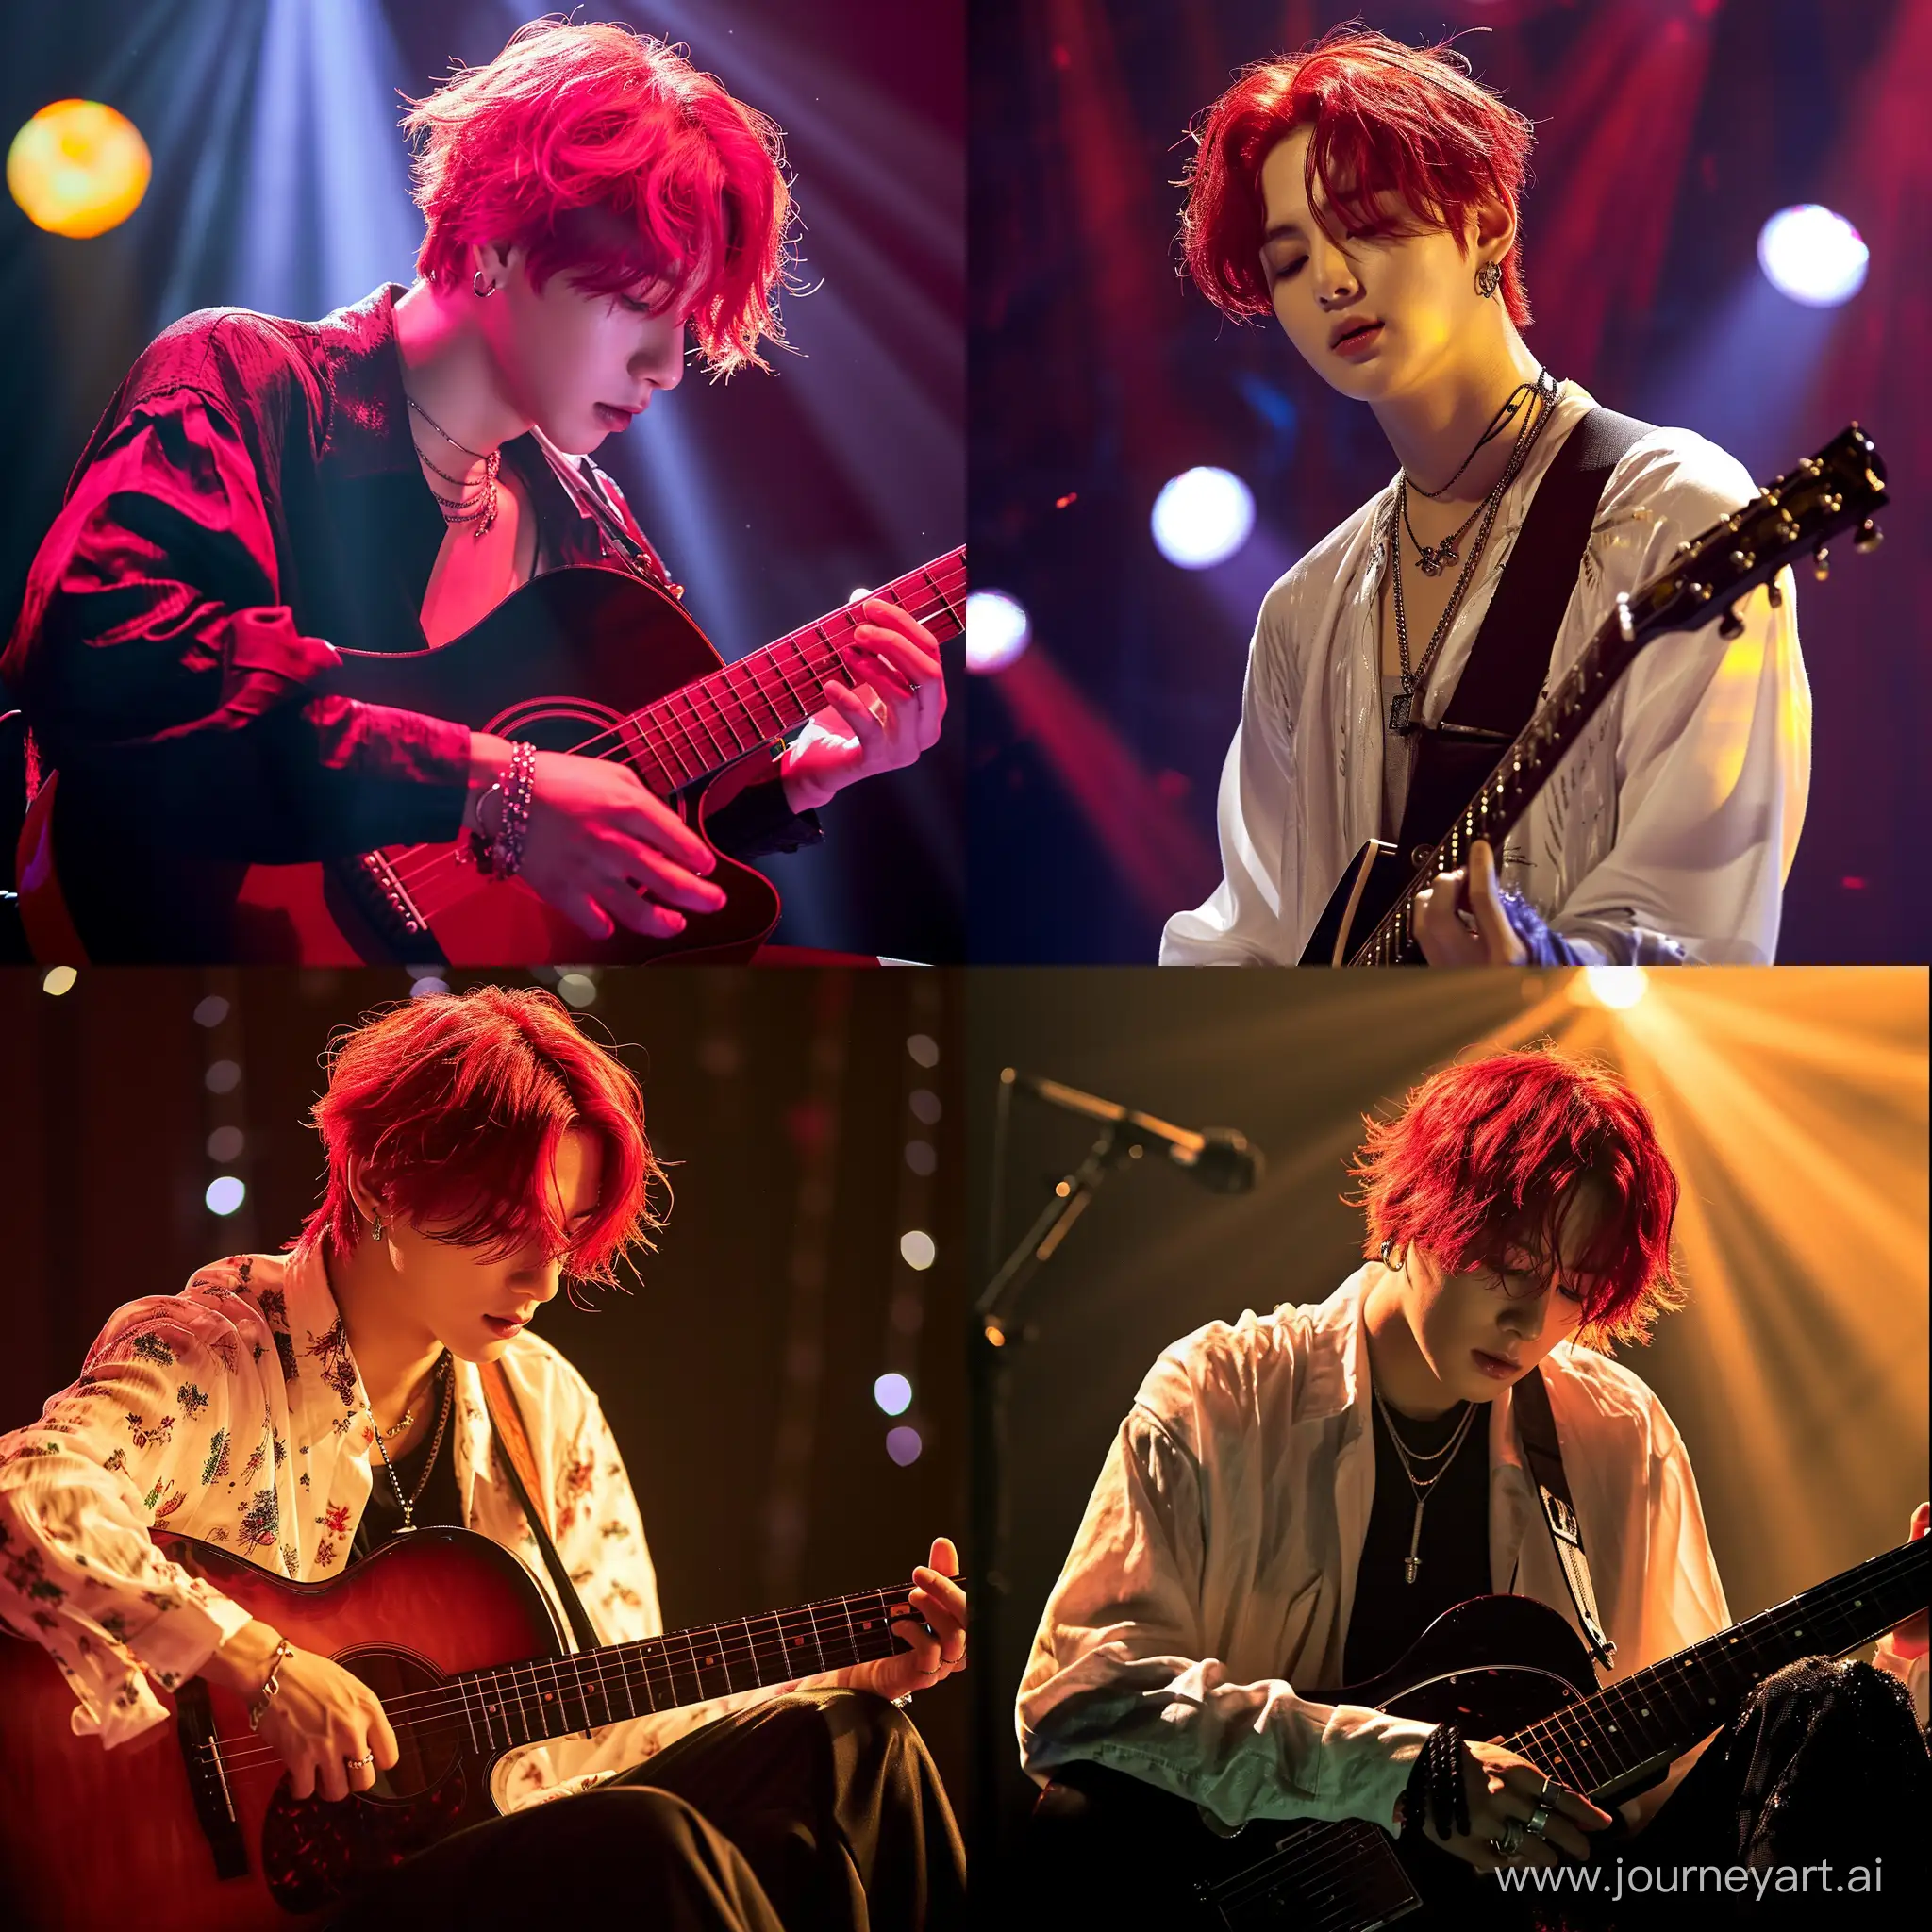 Jungkook-Playing-Guitar-with-Striking-Red-Hair-Under-Enchanting-Lighting